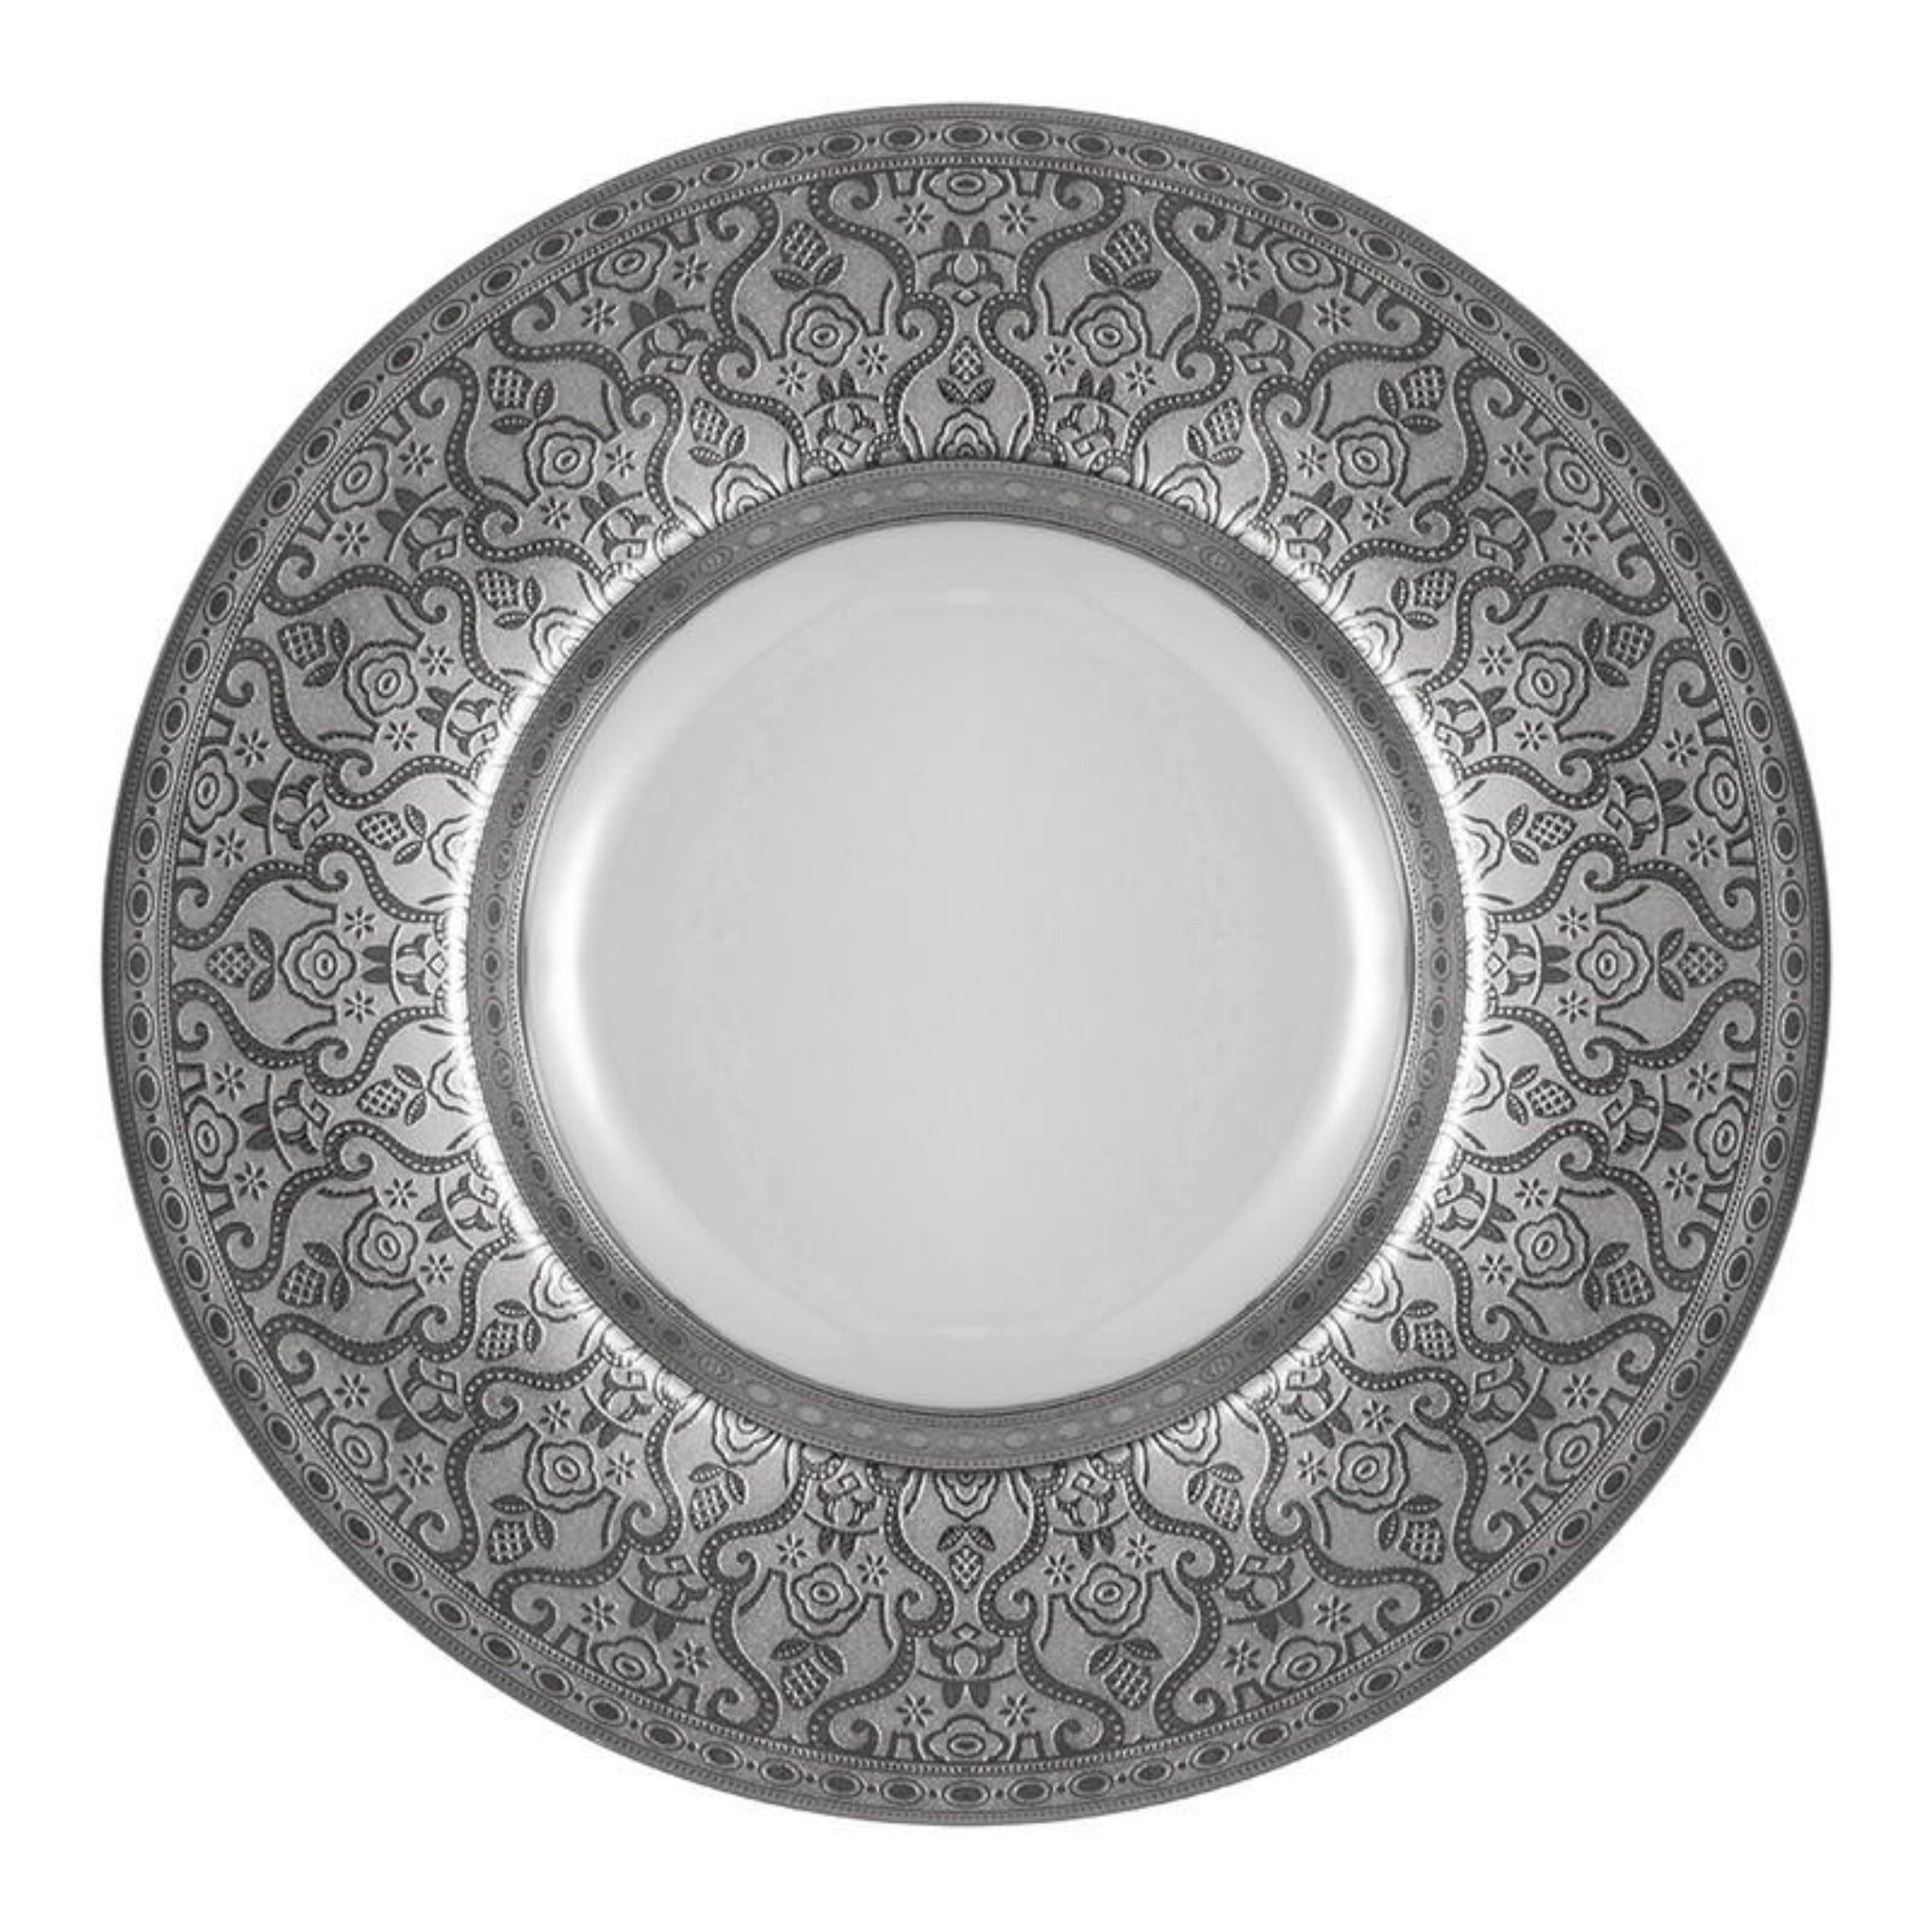 Falkenporzellan Dinner Set 112pcs - Porcelain - Full Silver - 130002